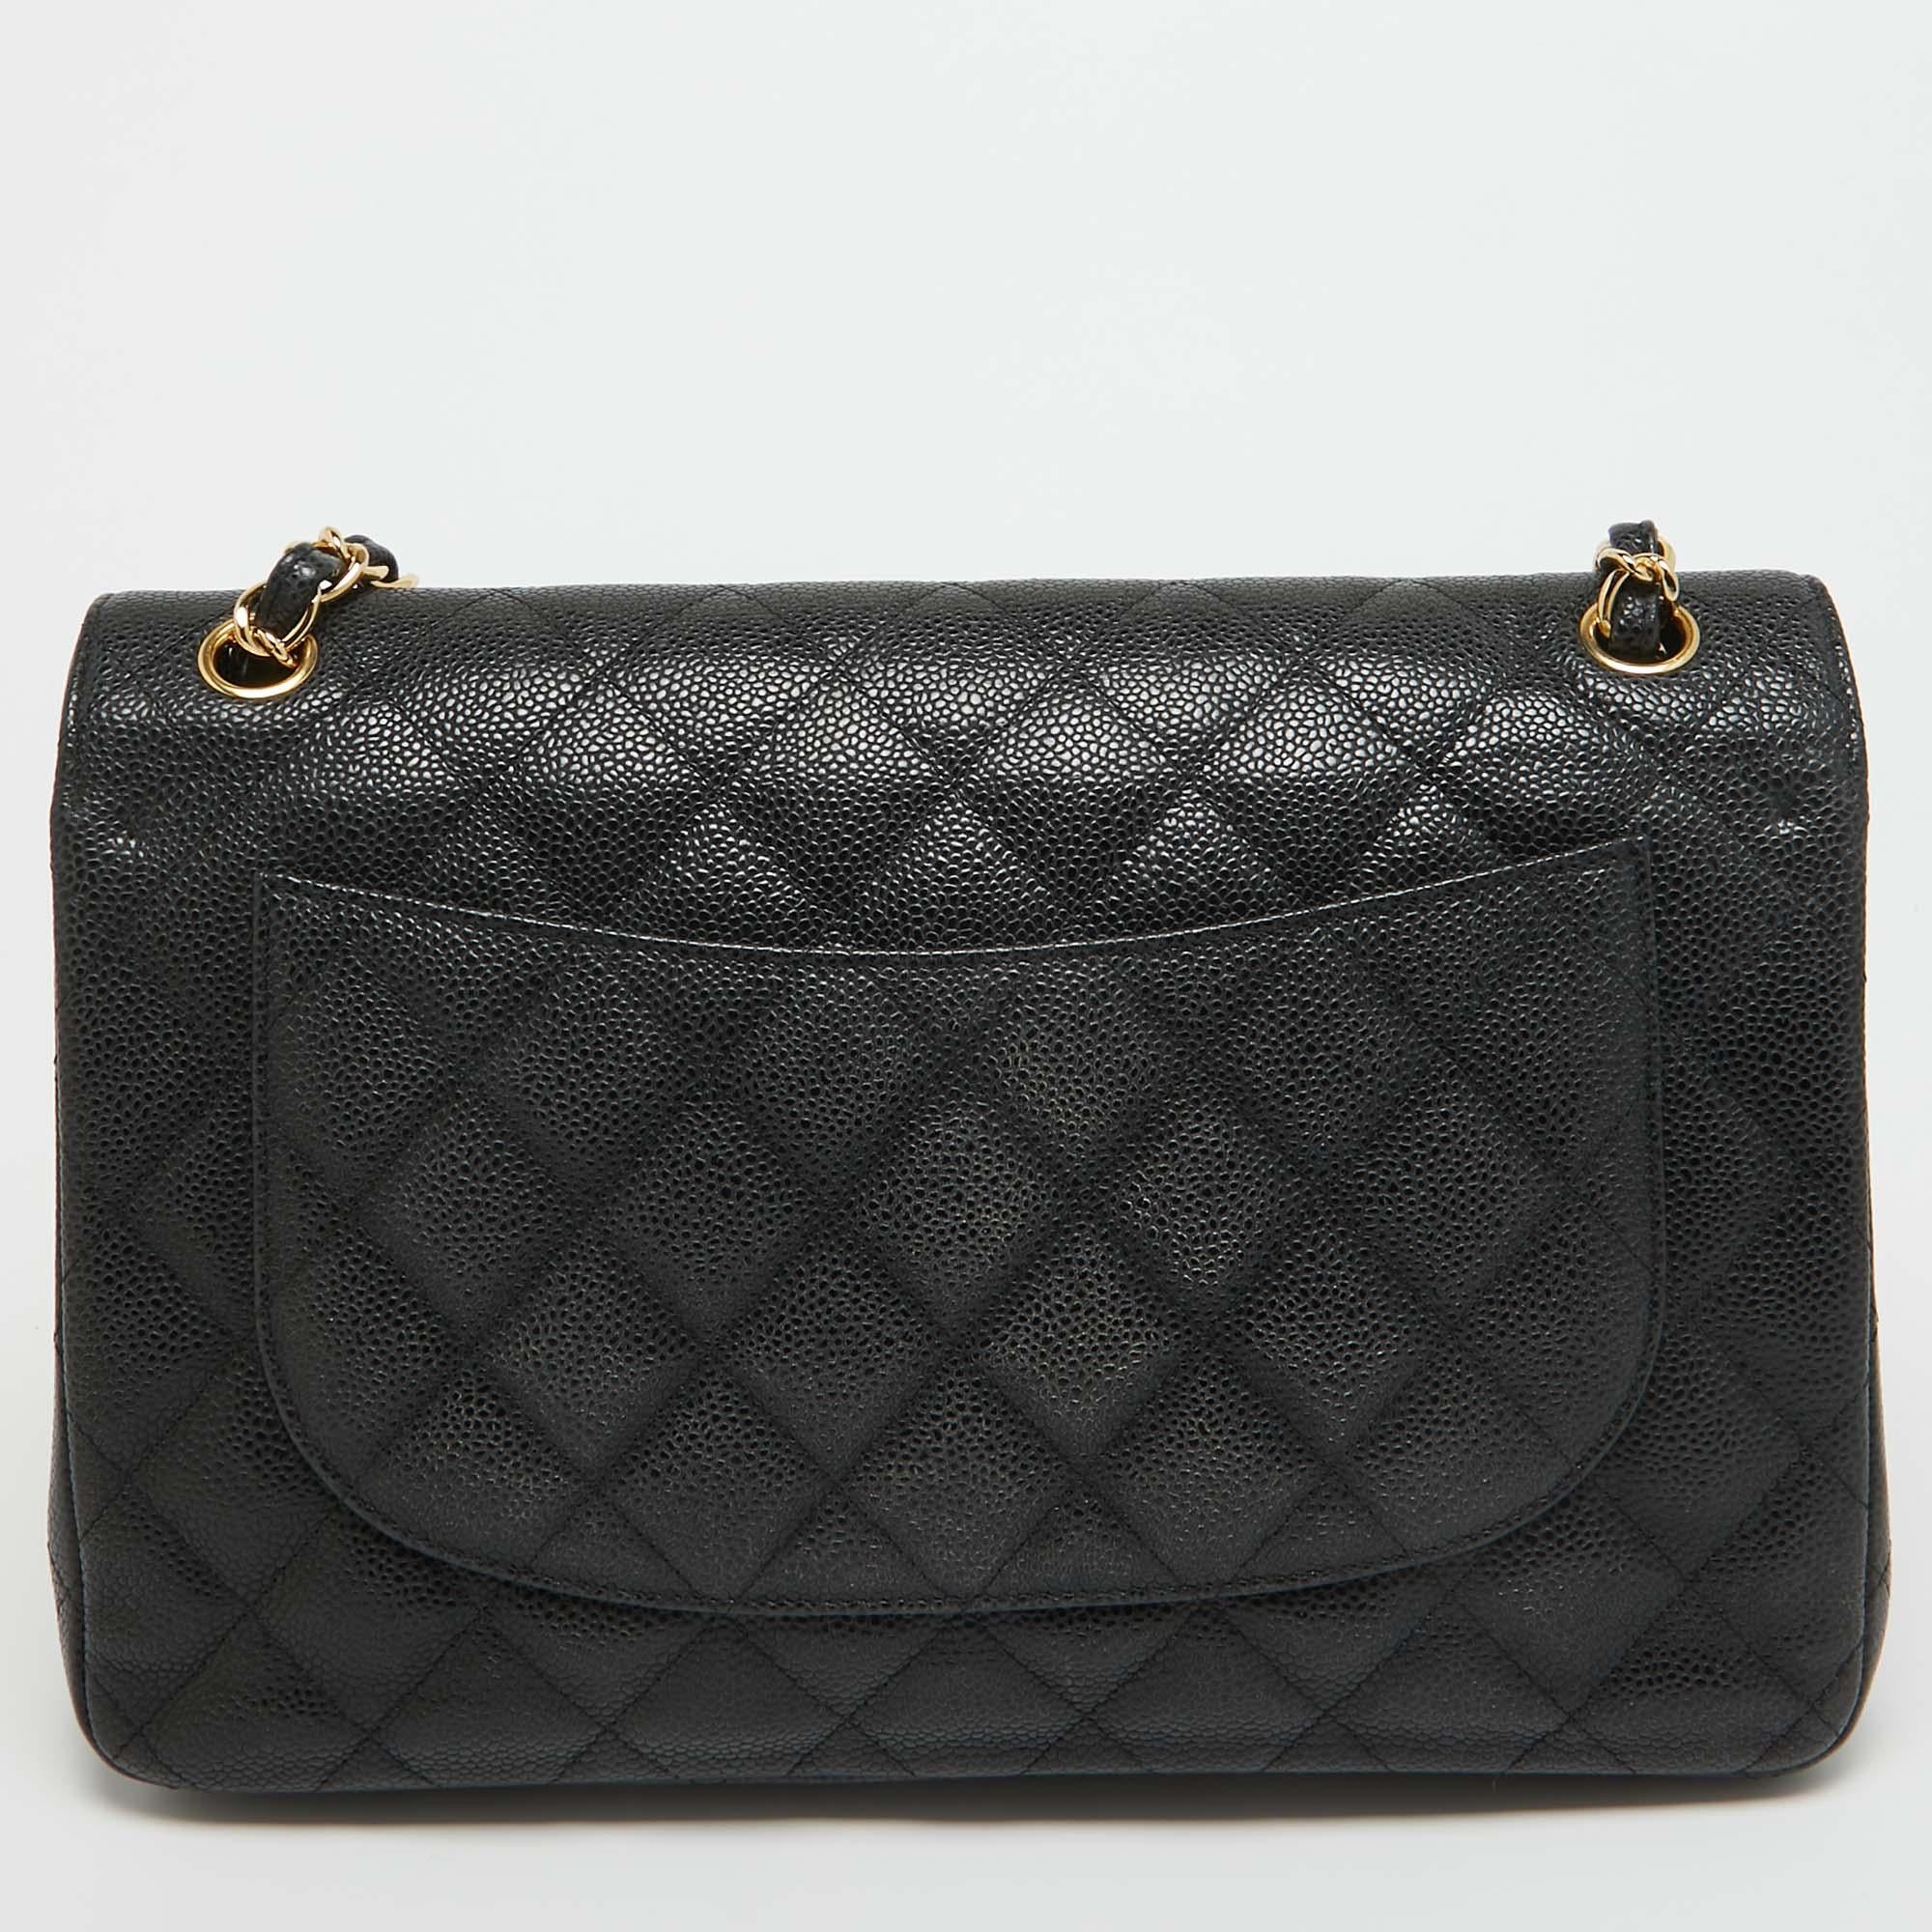 Makellose Handwerkskunst, immenser Stil und ein Hauch von Eleganz - diese Chanel Tasche hat einfach alles! Die perfekt genähte Handtasche wird nur aus erstklassigen MATERIALEN hergestellt, damit sie Ihnen lange erhalten bleibt. Mit den